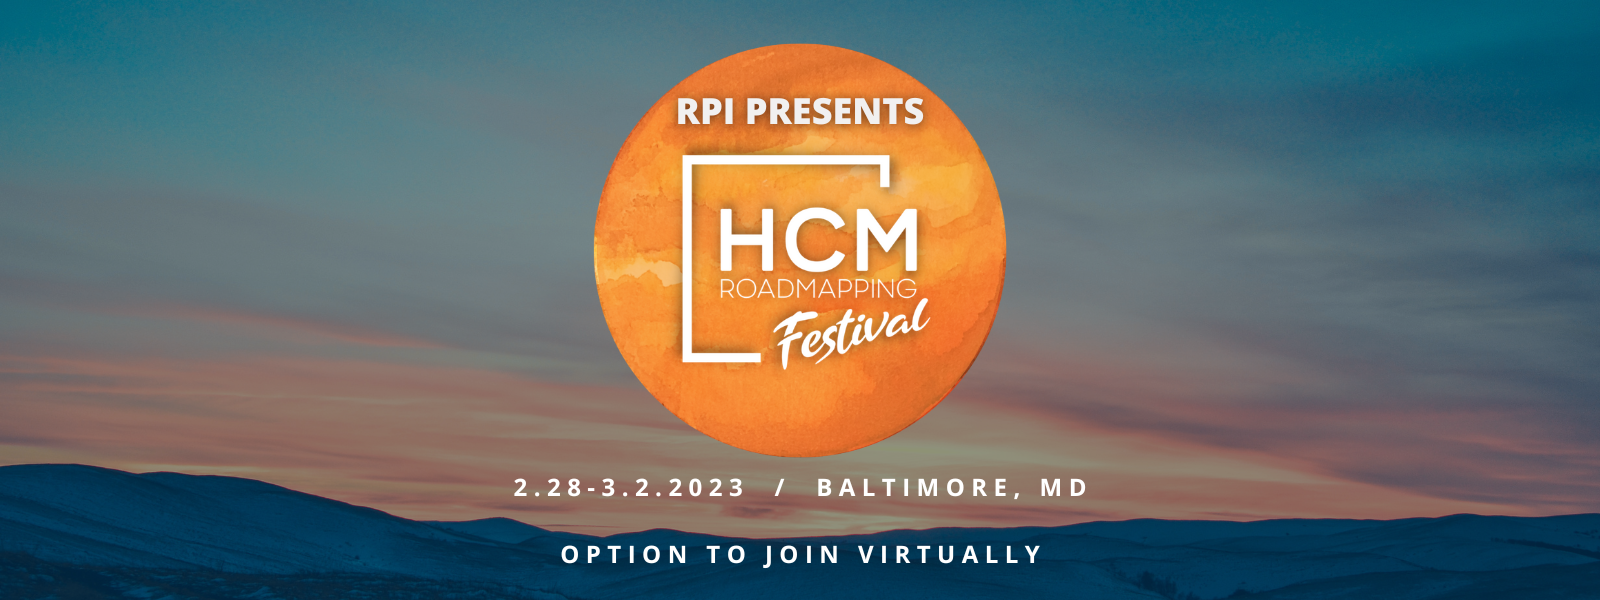 HCM Roadmapping Festival - Header (2)